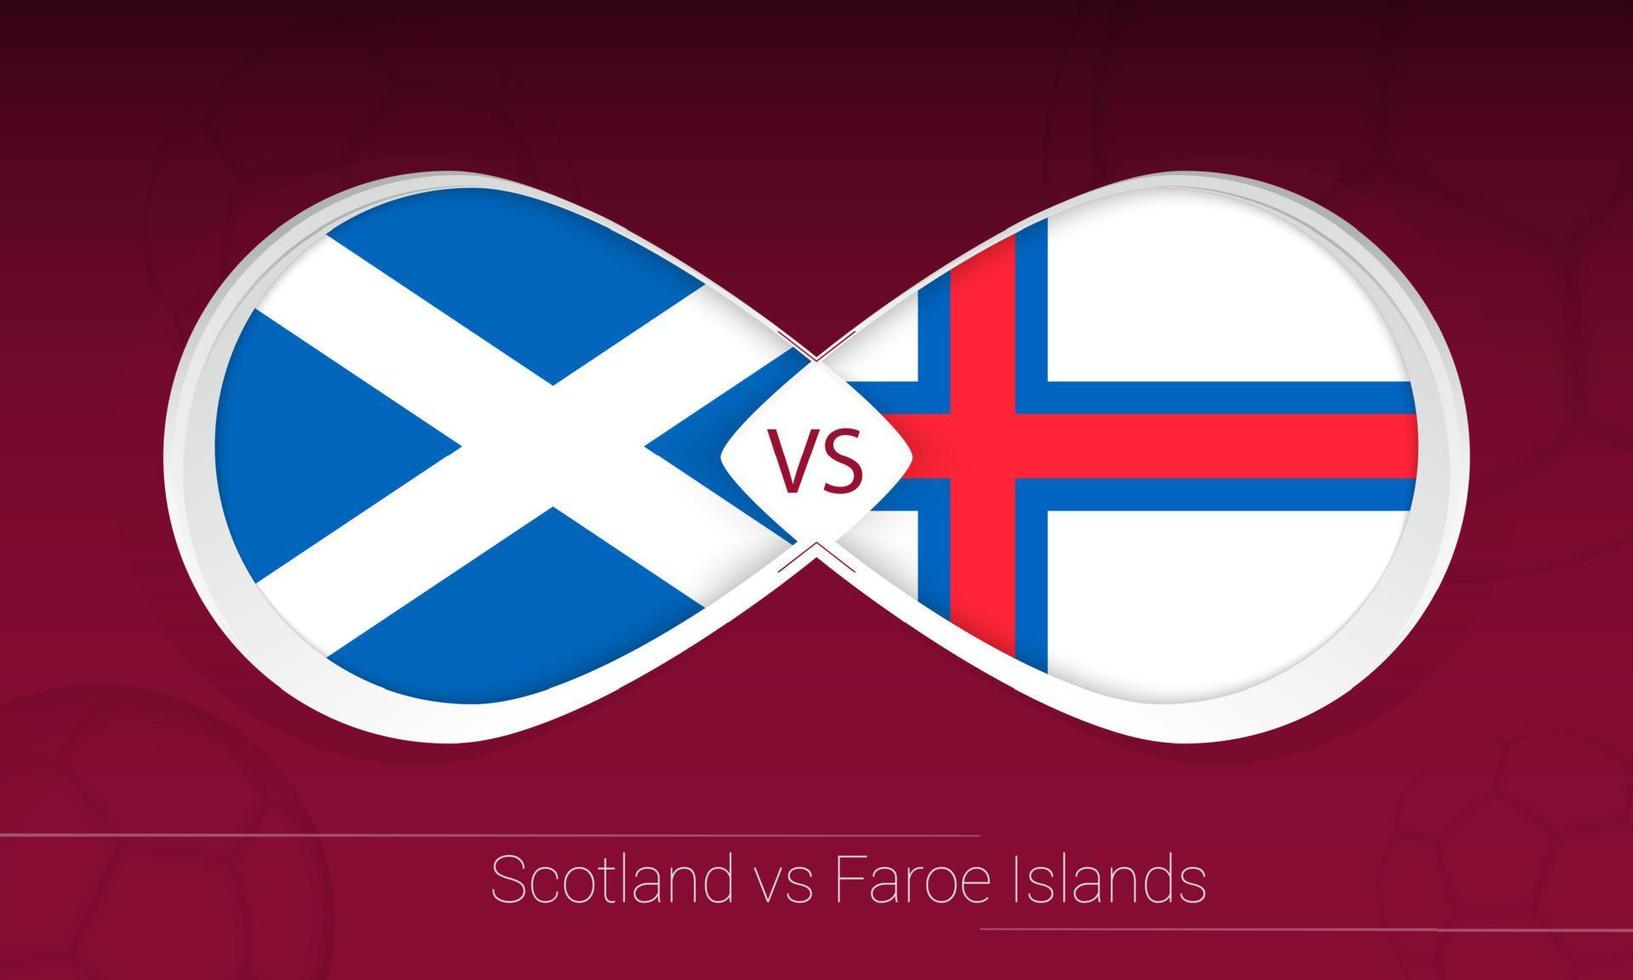 Schottland gegen Färöer im Fußballwettbewerb, Gruppe f. gegen Symbol auf Fußballhintergrund. vektor